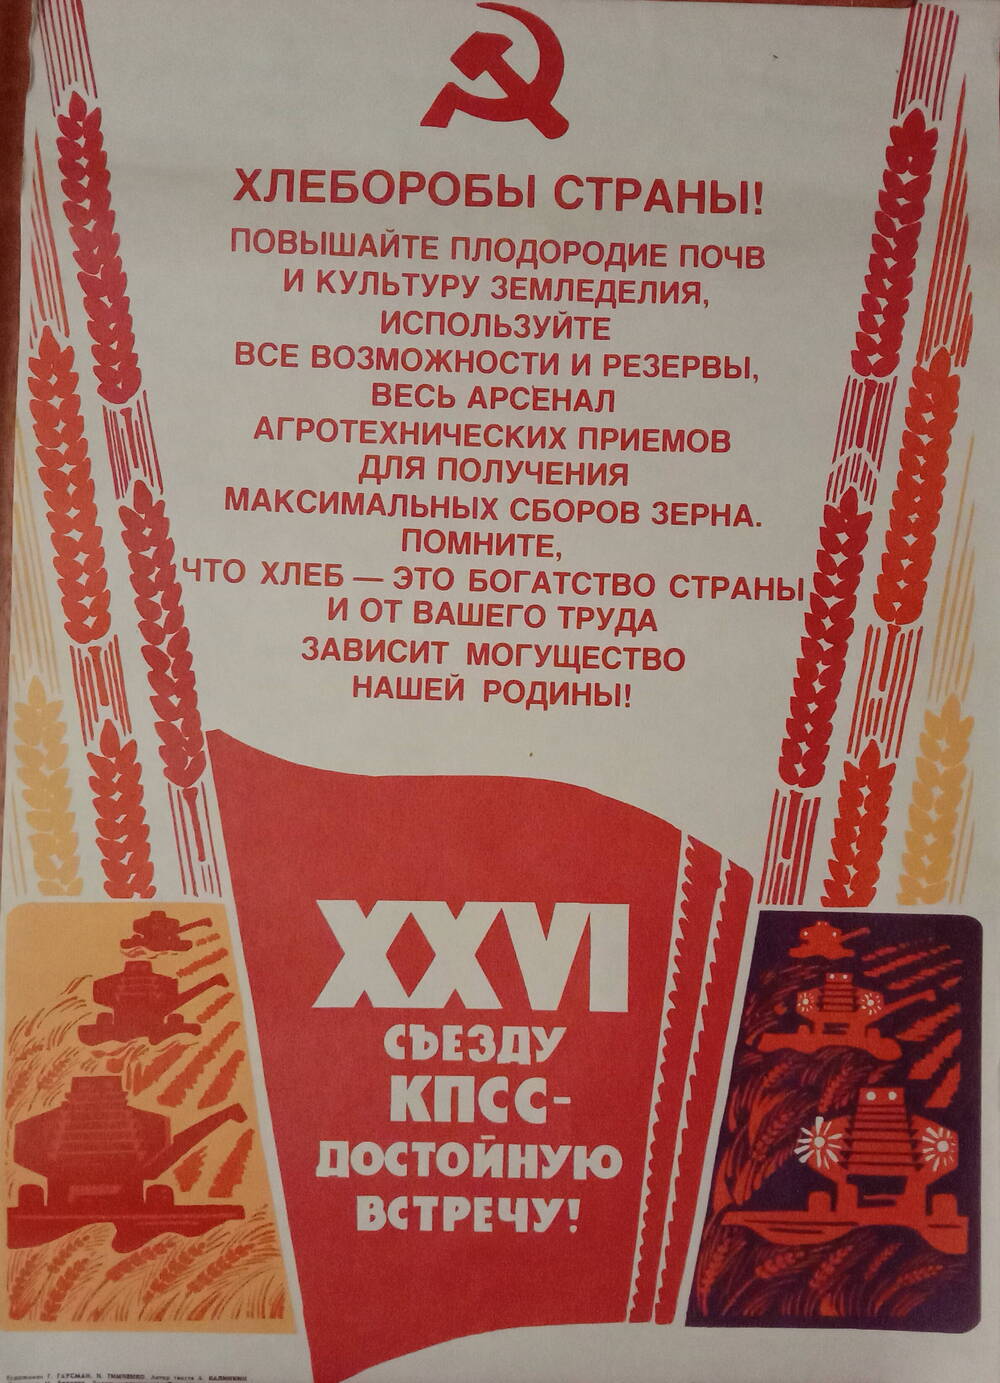 Плакат
«Хлеборобы страны!
XXVI съезду КПСС - достойную встречу!»